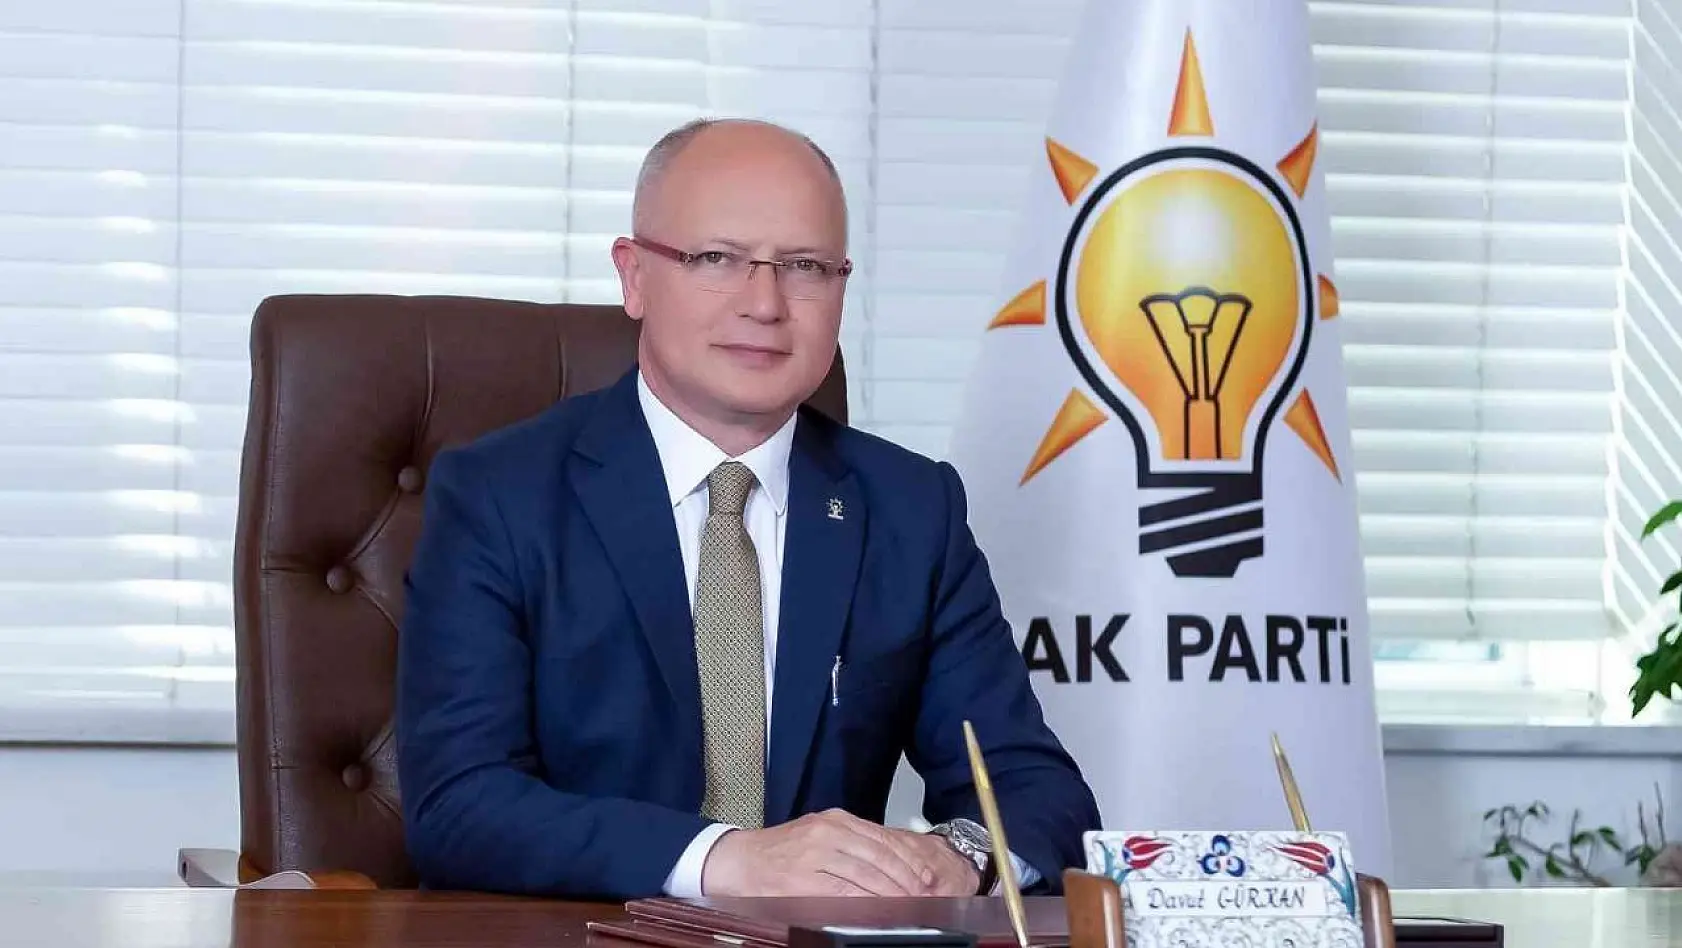 AK Parti Teşkilat Akademisi için ders zili yeniden çalıyor